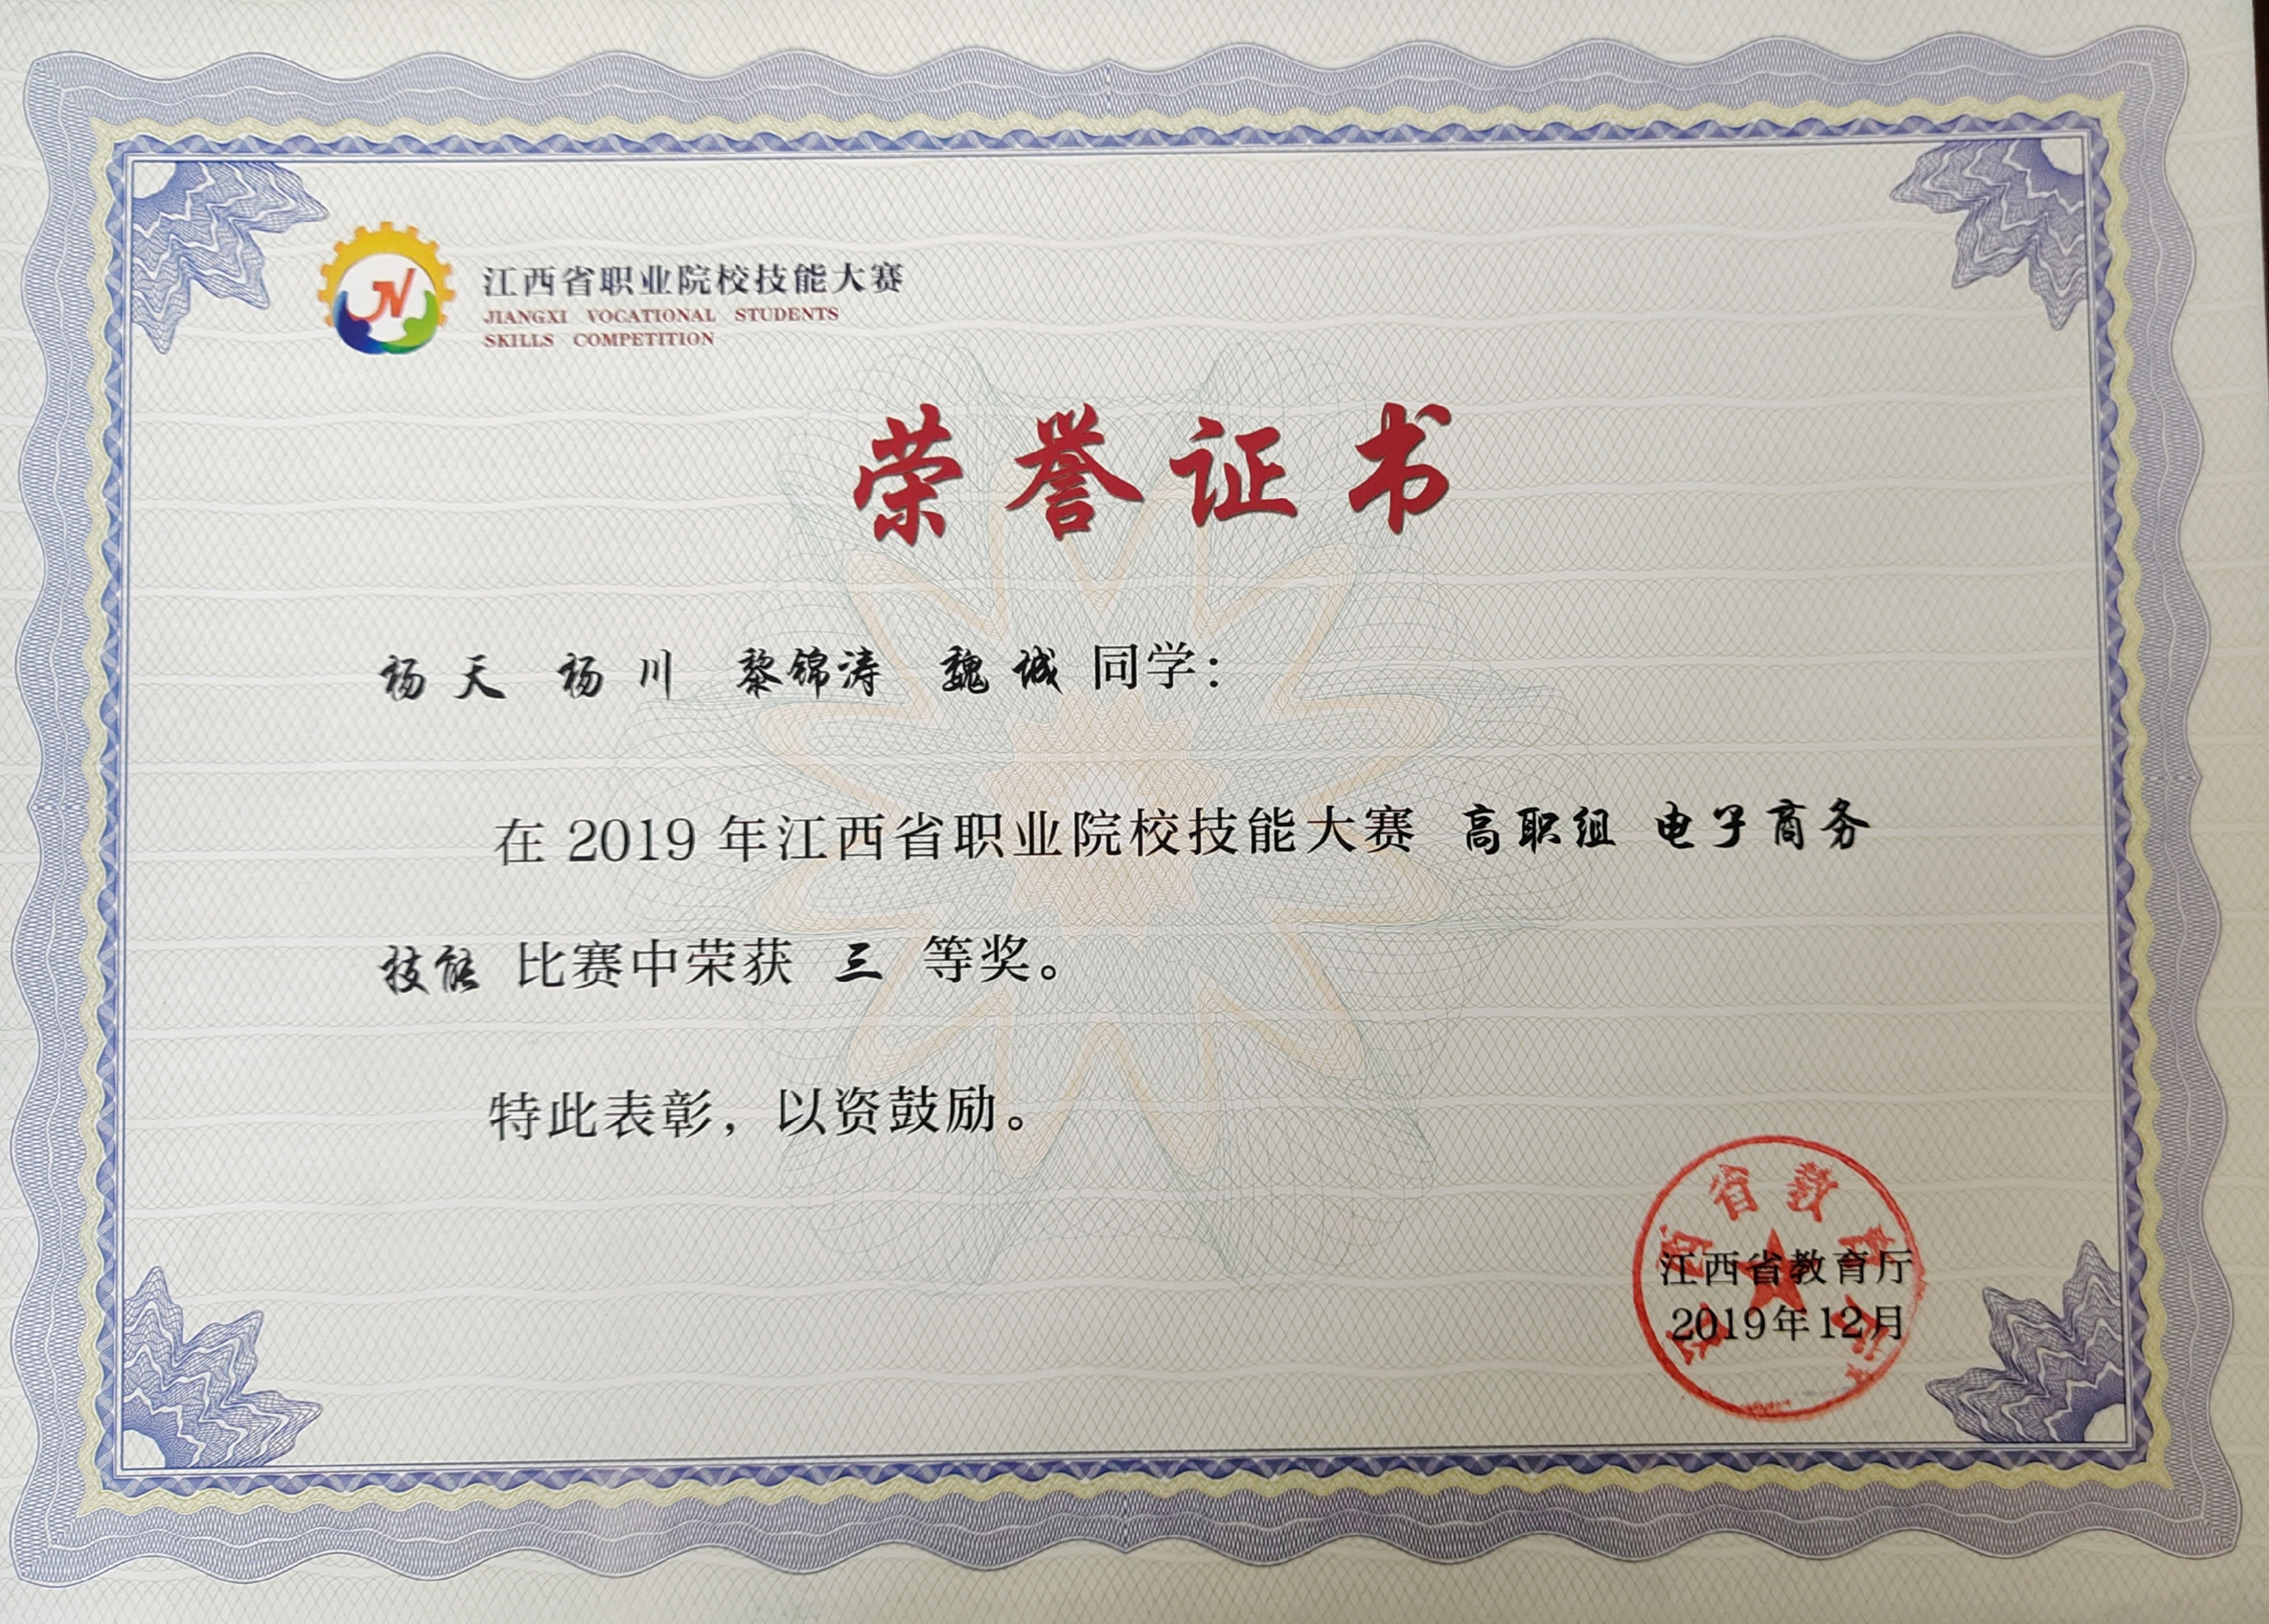 我院选派代表队参加2019年江西省职业技能大赛电子商务赛项